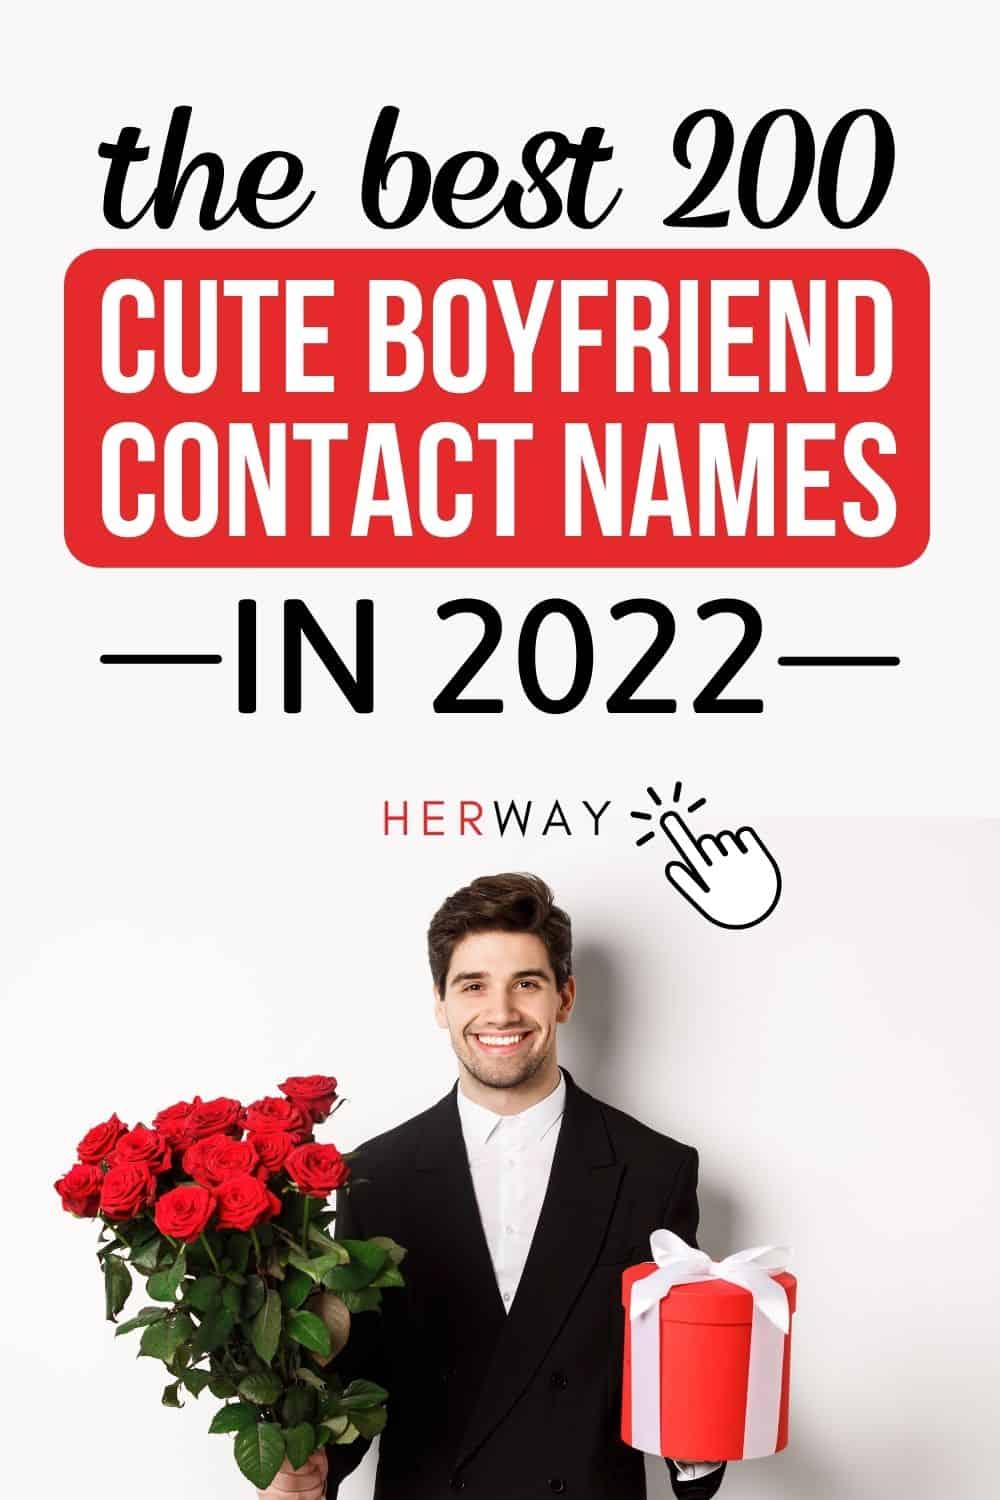 I migliori 200 nomi di contatto per fidanzati carini nel 2022 Pinterest